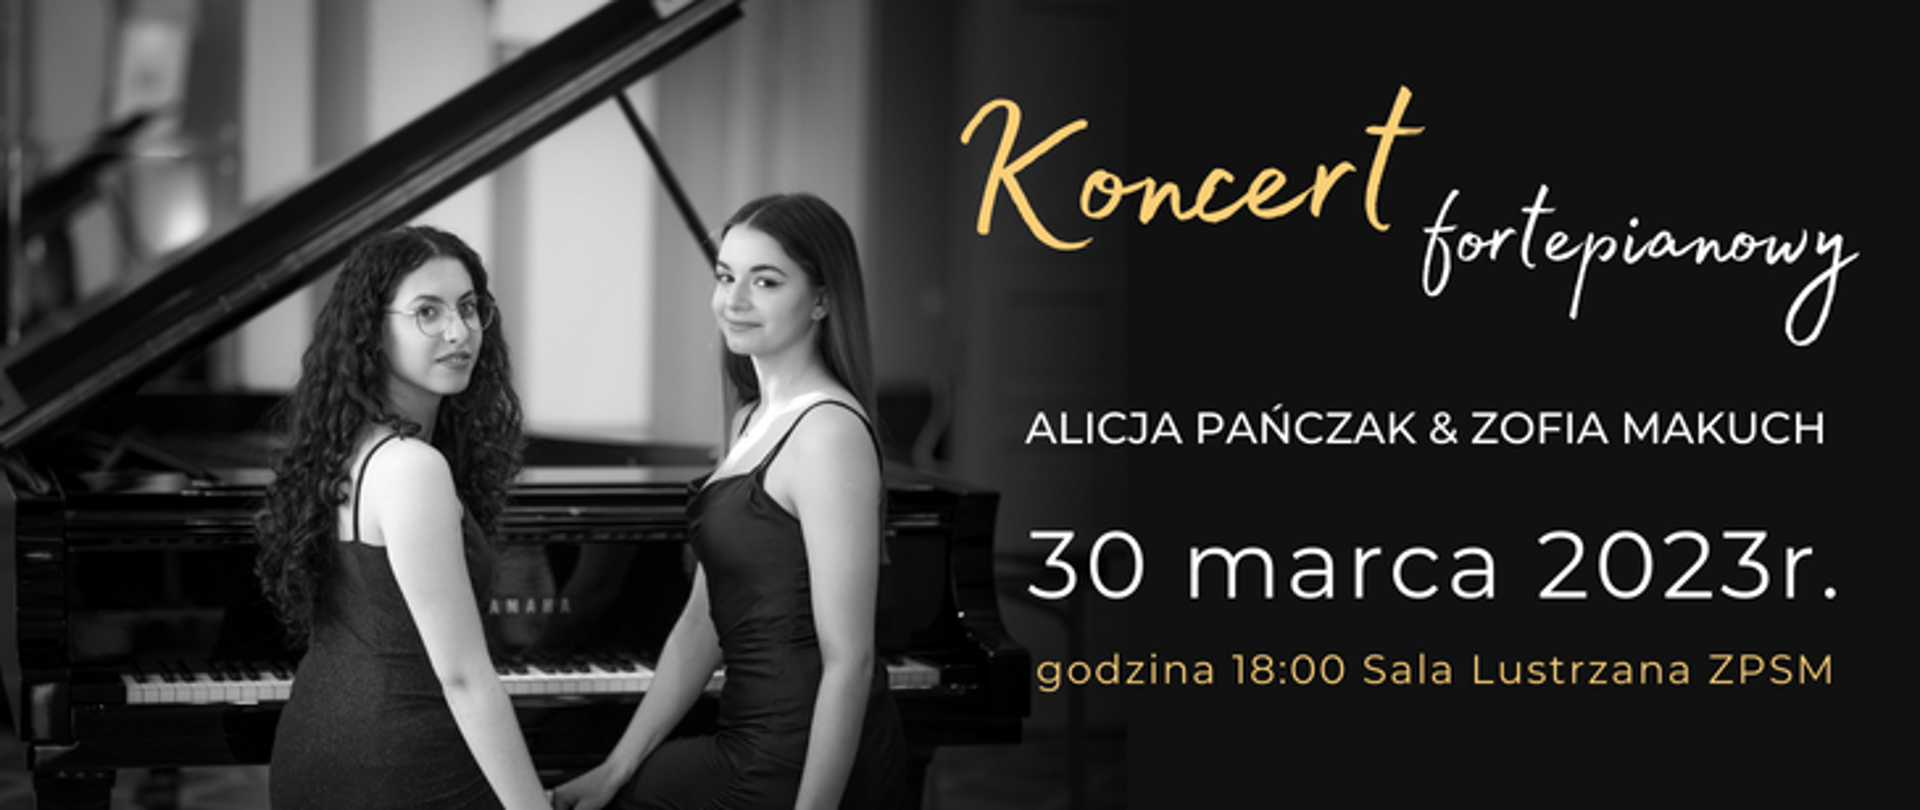 Zapowiedź wydarzenia - Koncert fortepianowy, zdjęcie dwóch pianistek na tle fortepianu, po prawej napisz: Koncert Fortepianowy, Alicja Pańczak @ Zofia Makuch 30 marca 2023, godz. 18:00 Sala Lustrzana